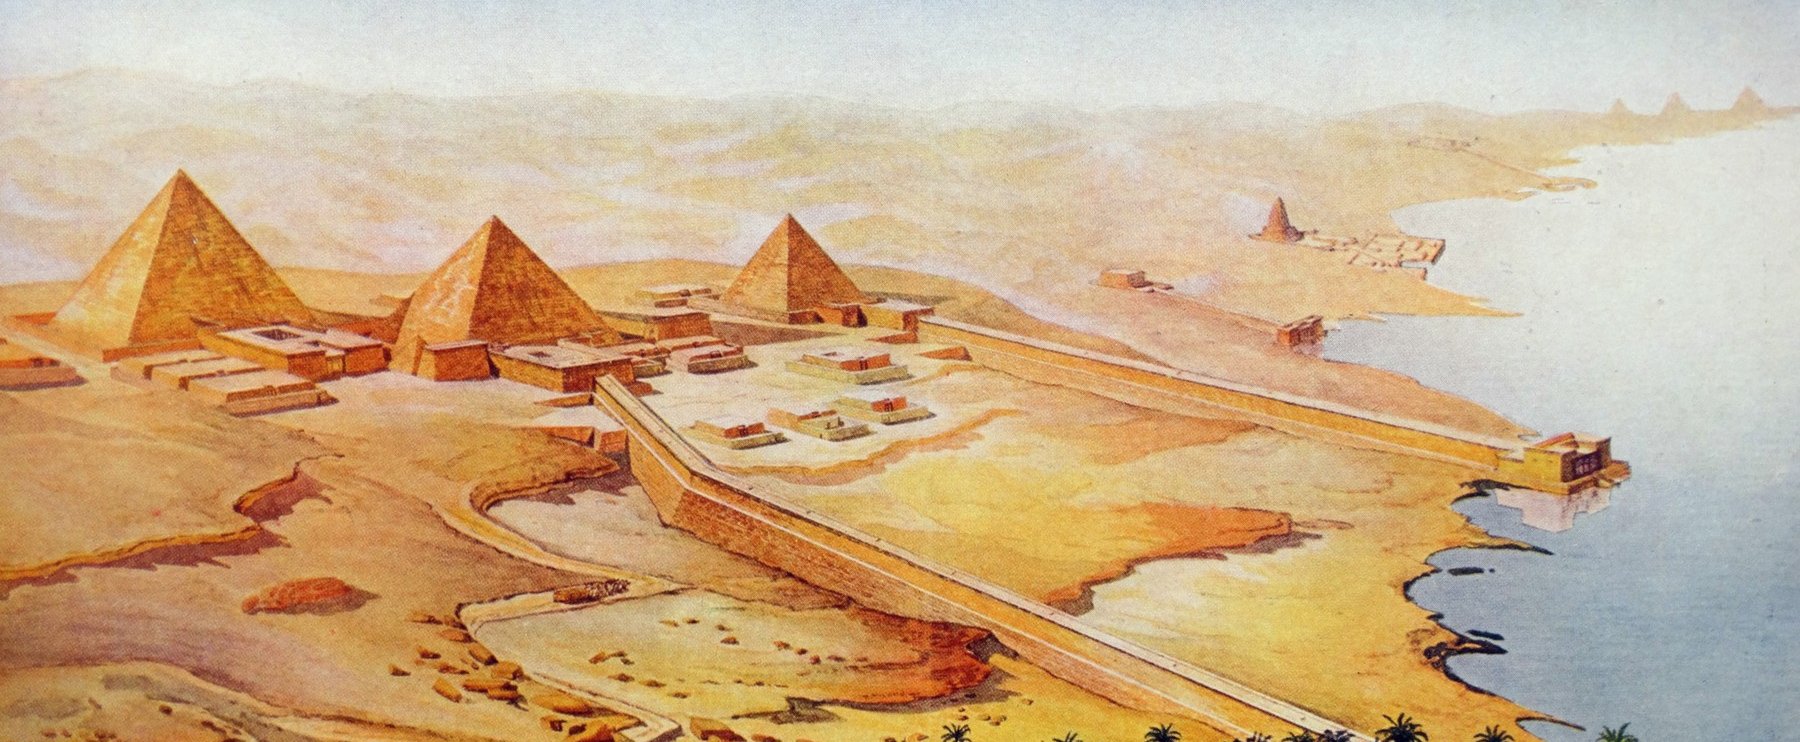 Kísérteties dolgokat találtak az egyiptomi nagy piramis egyik kamrájában, azonnal eltűntek, miután felszínre hozták ezeket